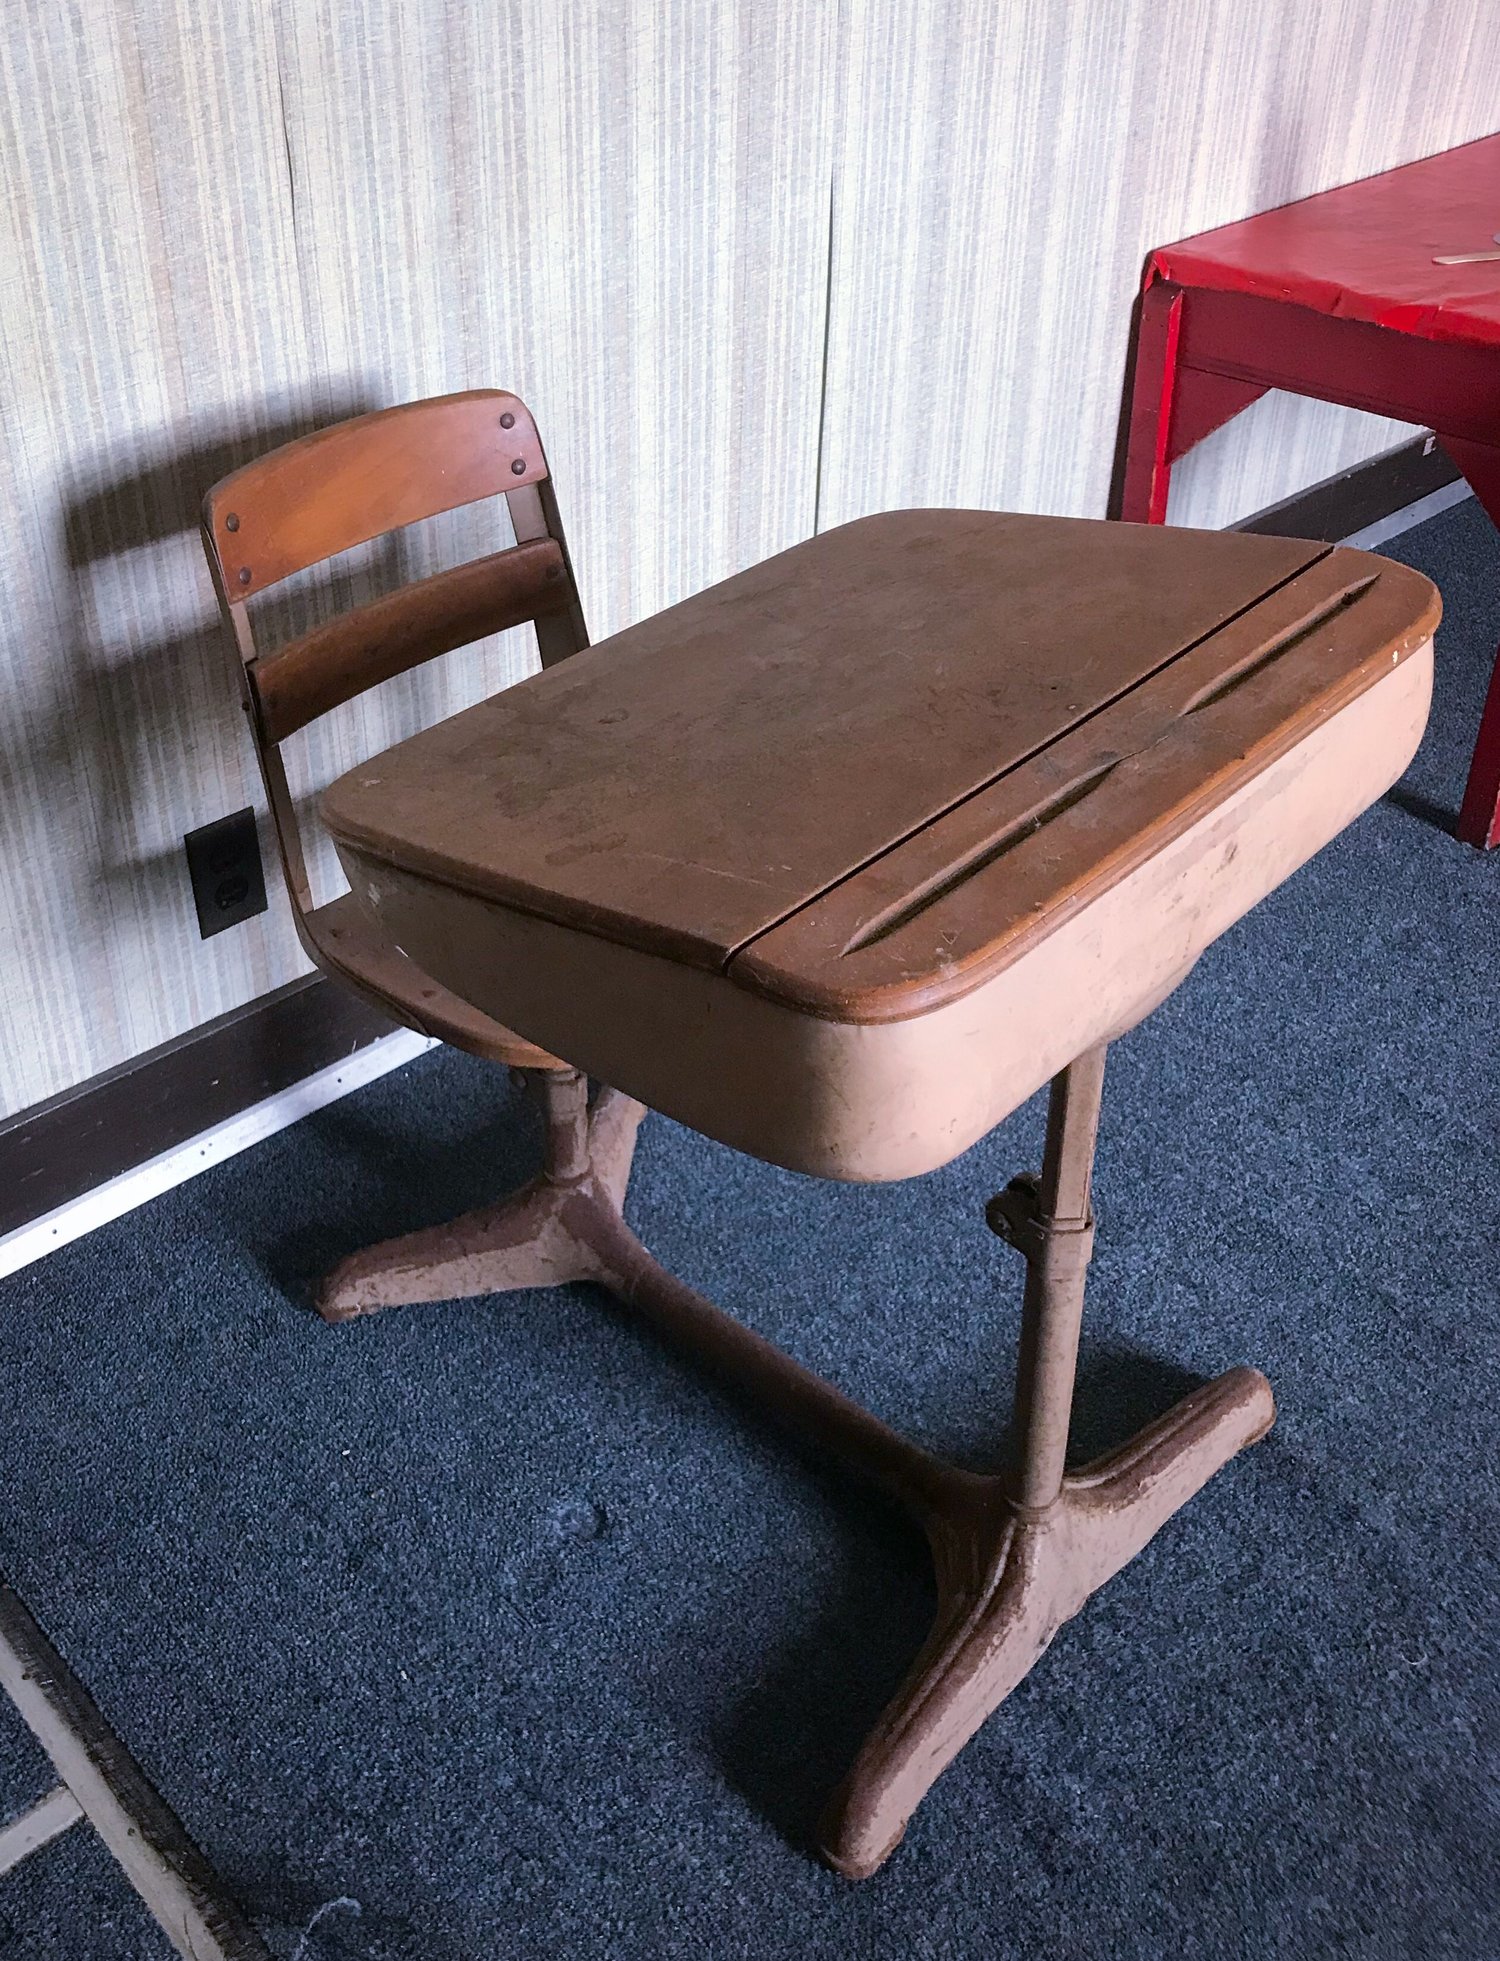 Vintage School Desks For Sale St James C M E Church